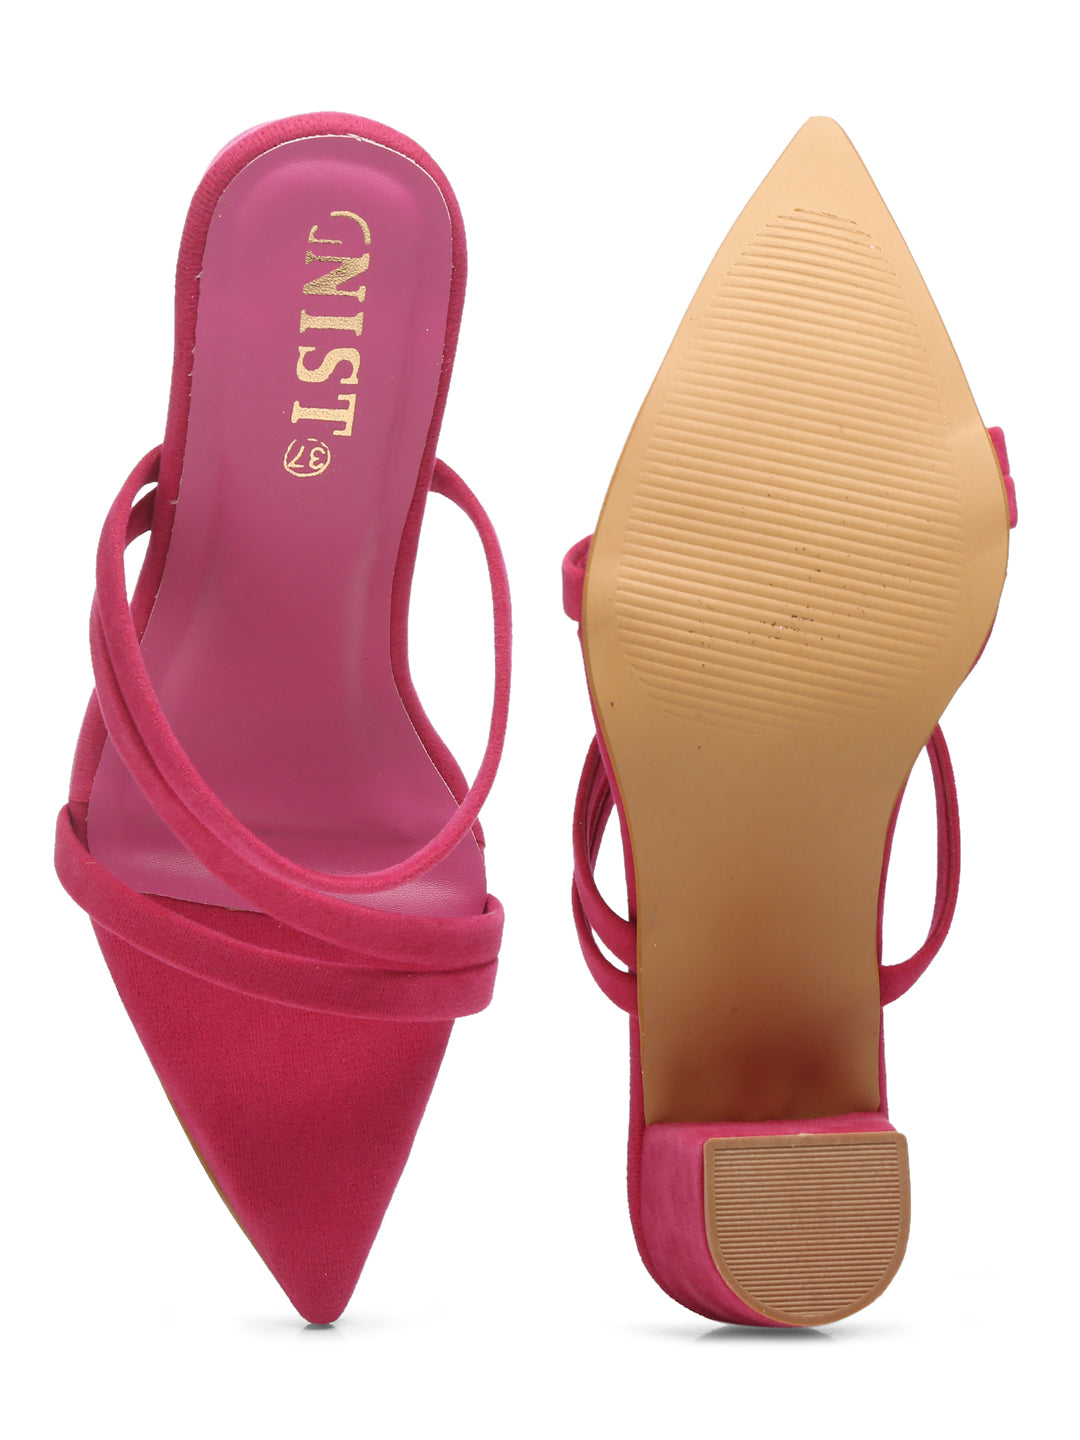 GNIST Super Pointed Hot Pink Stilettos Heels